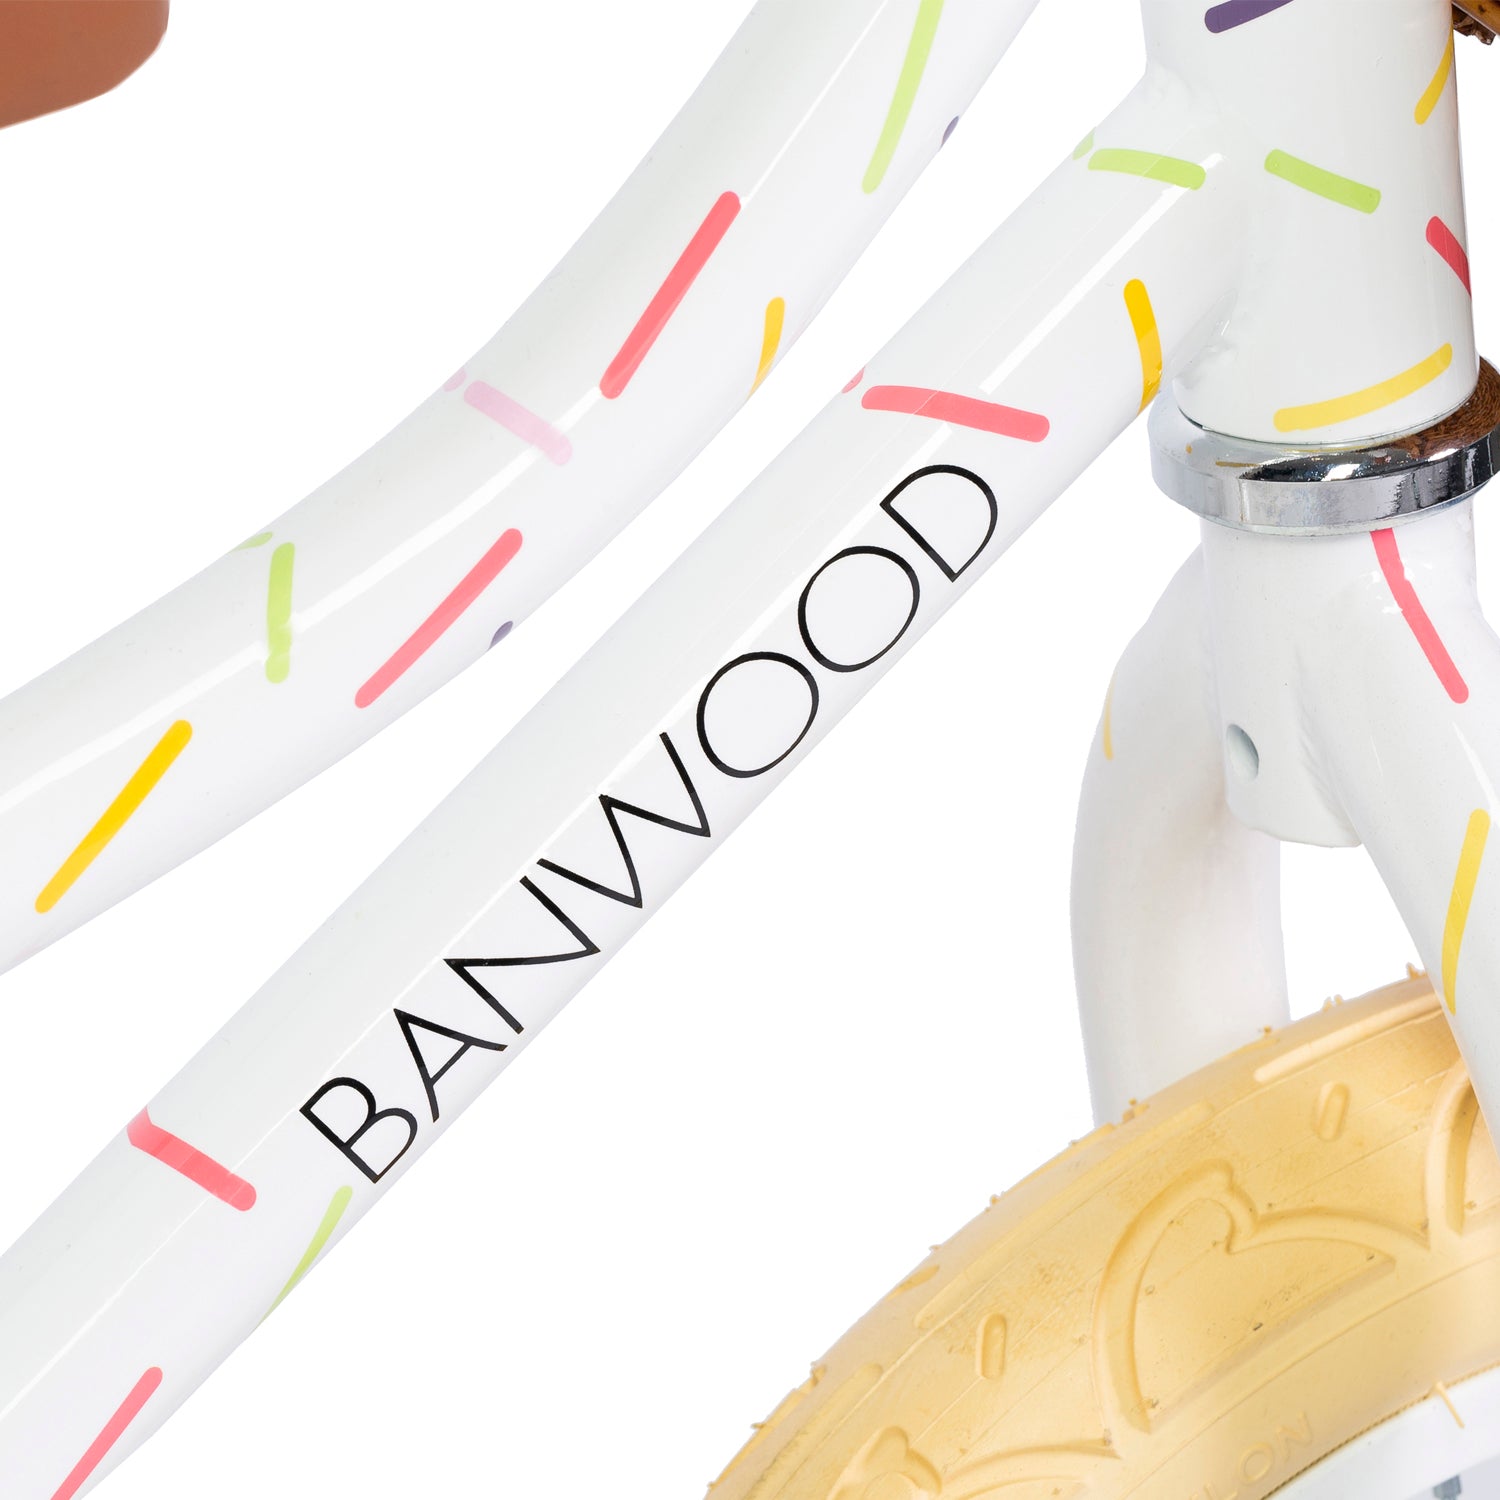 Ontdek deze kleurrijke Banwood loopfiets vintage banwood x marest allerga white! Deze toffe loopfiets voor jongens en meisjes heeft een witte kleur en is voorzien van een vrolijke confettiprint. VanZus